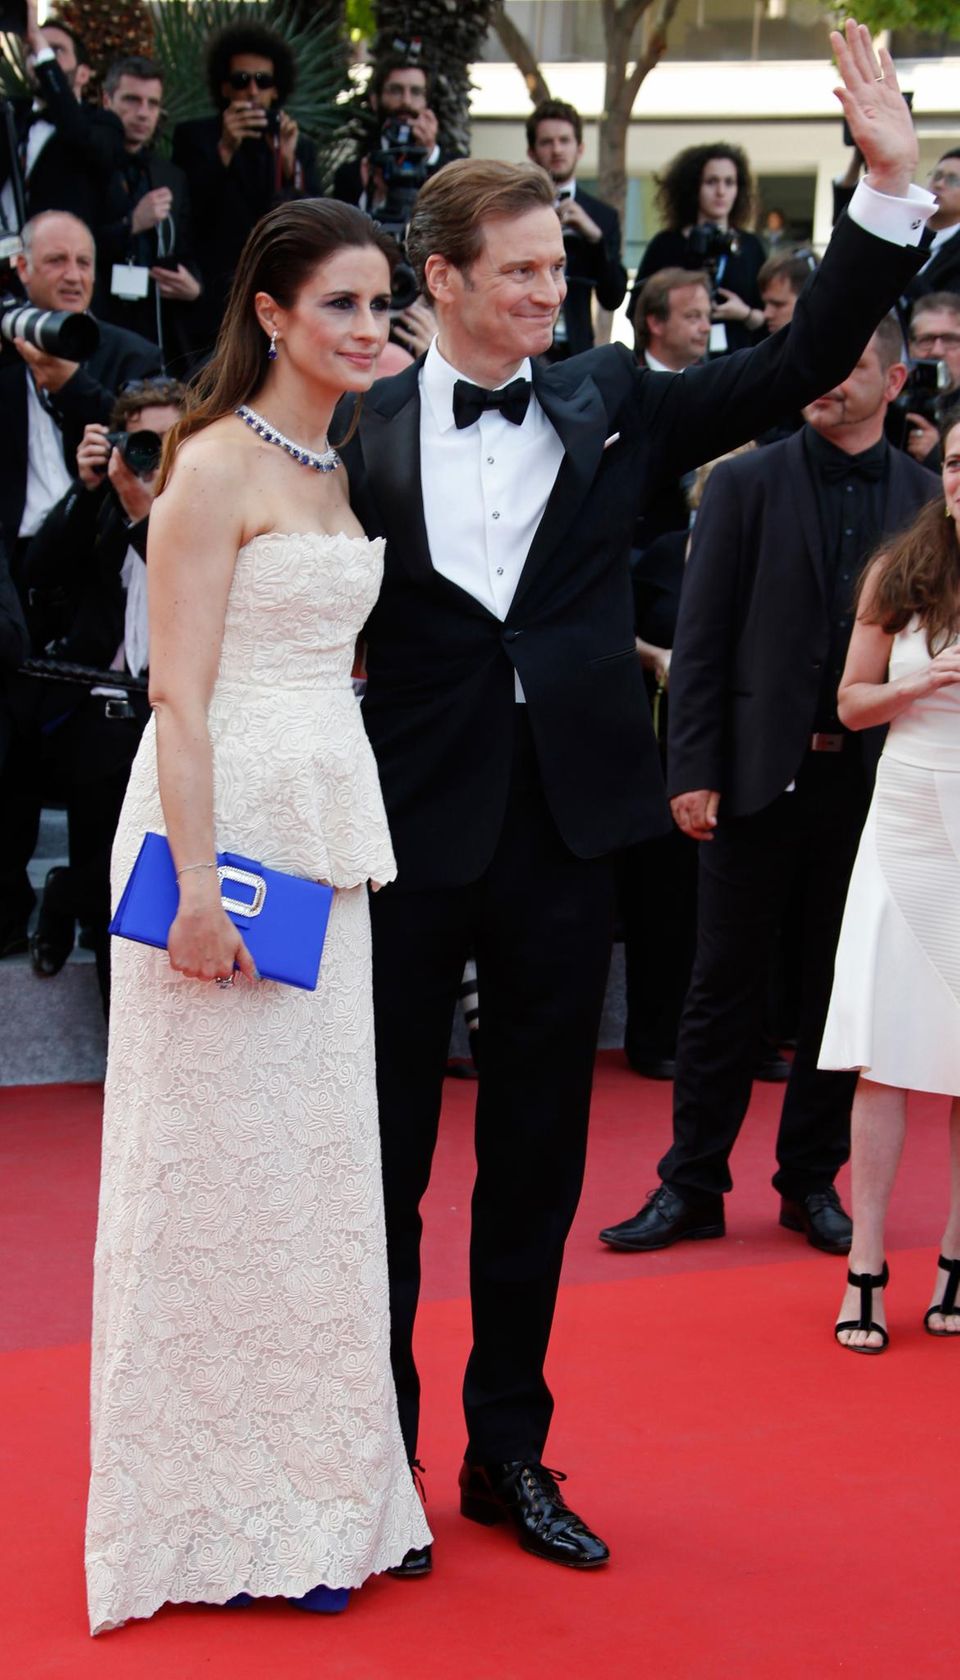 Colin Firth erscheint mit Ehefrau Livia Giuggioli auf denm roten Teppich.